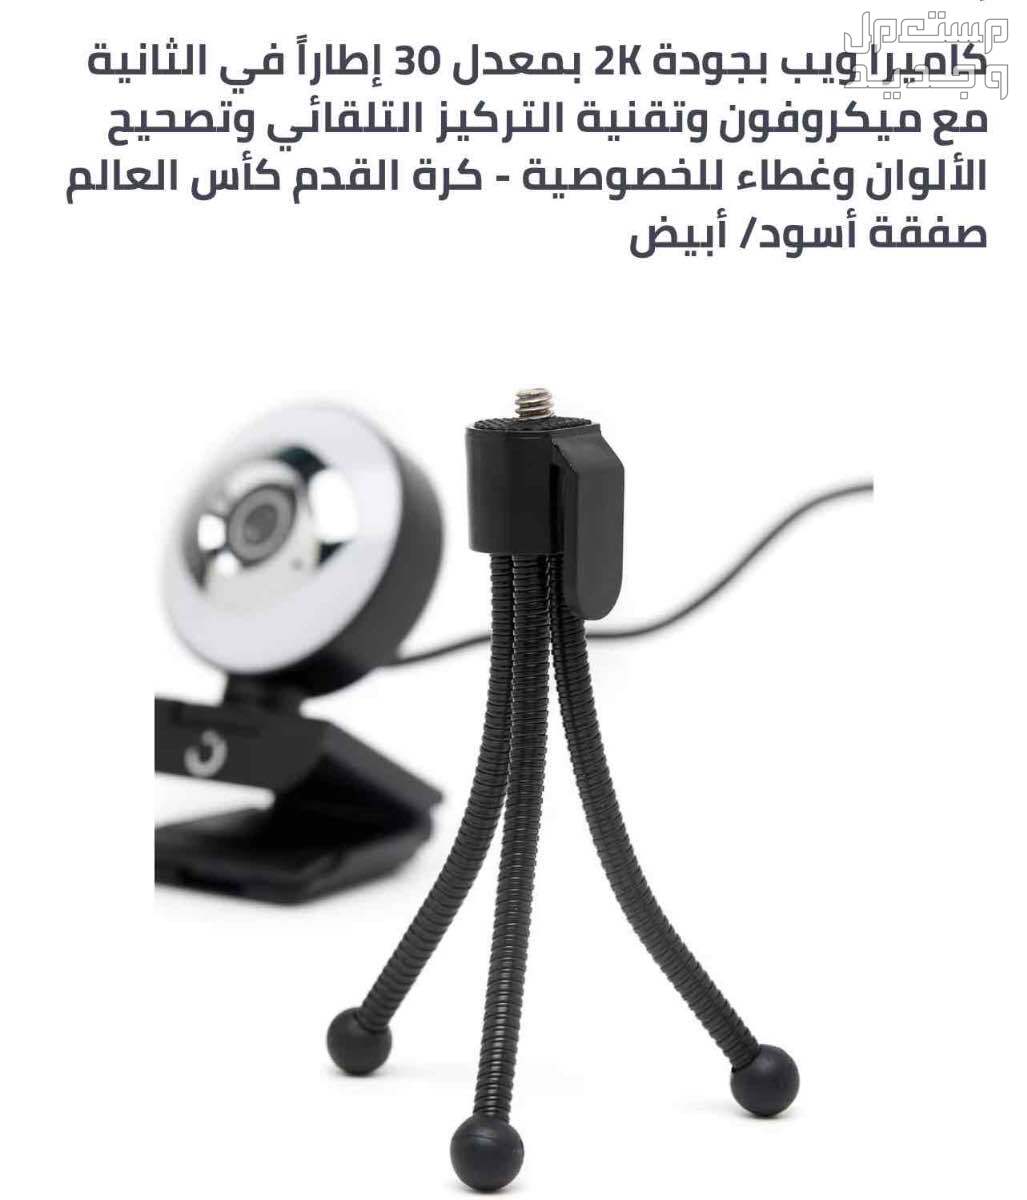 كاميرة لصانعي المحتوى والبثوث واصحاب الاجتماعات   في الرياض